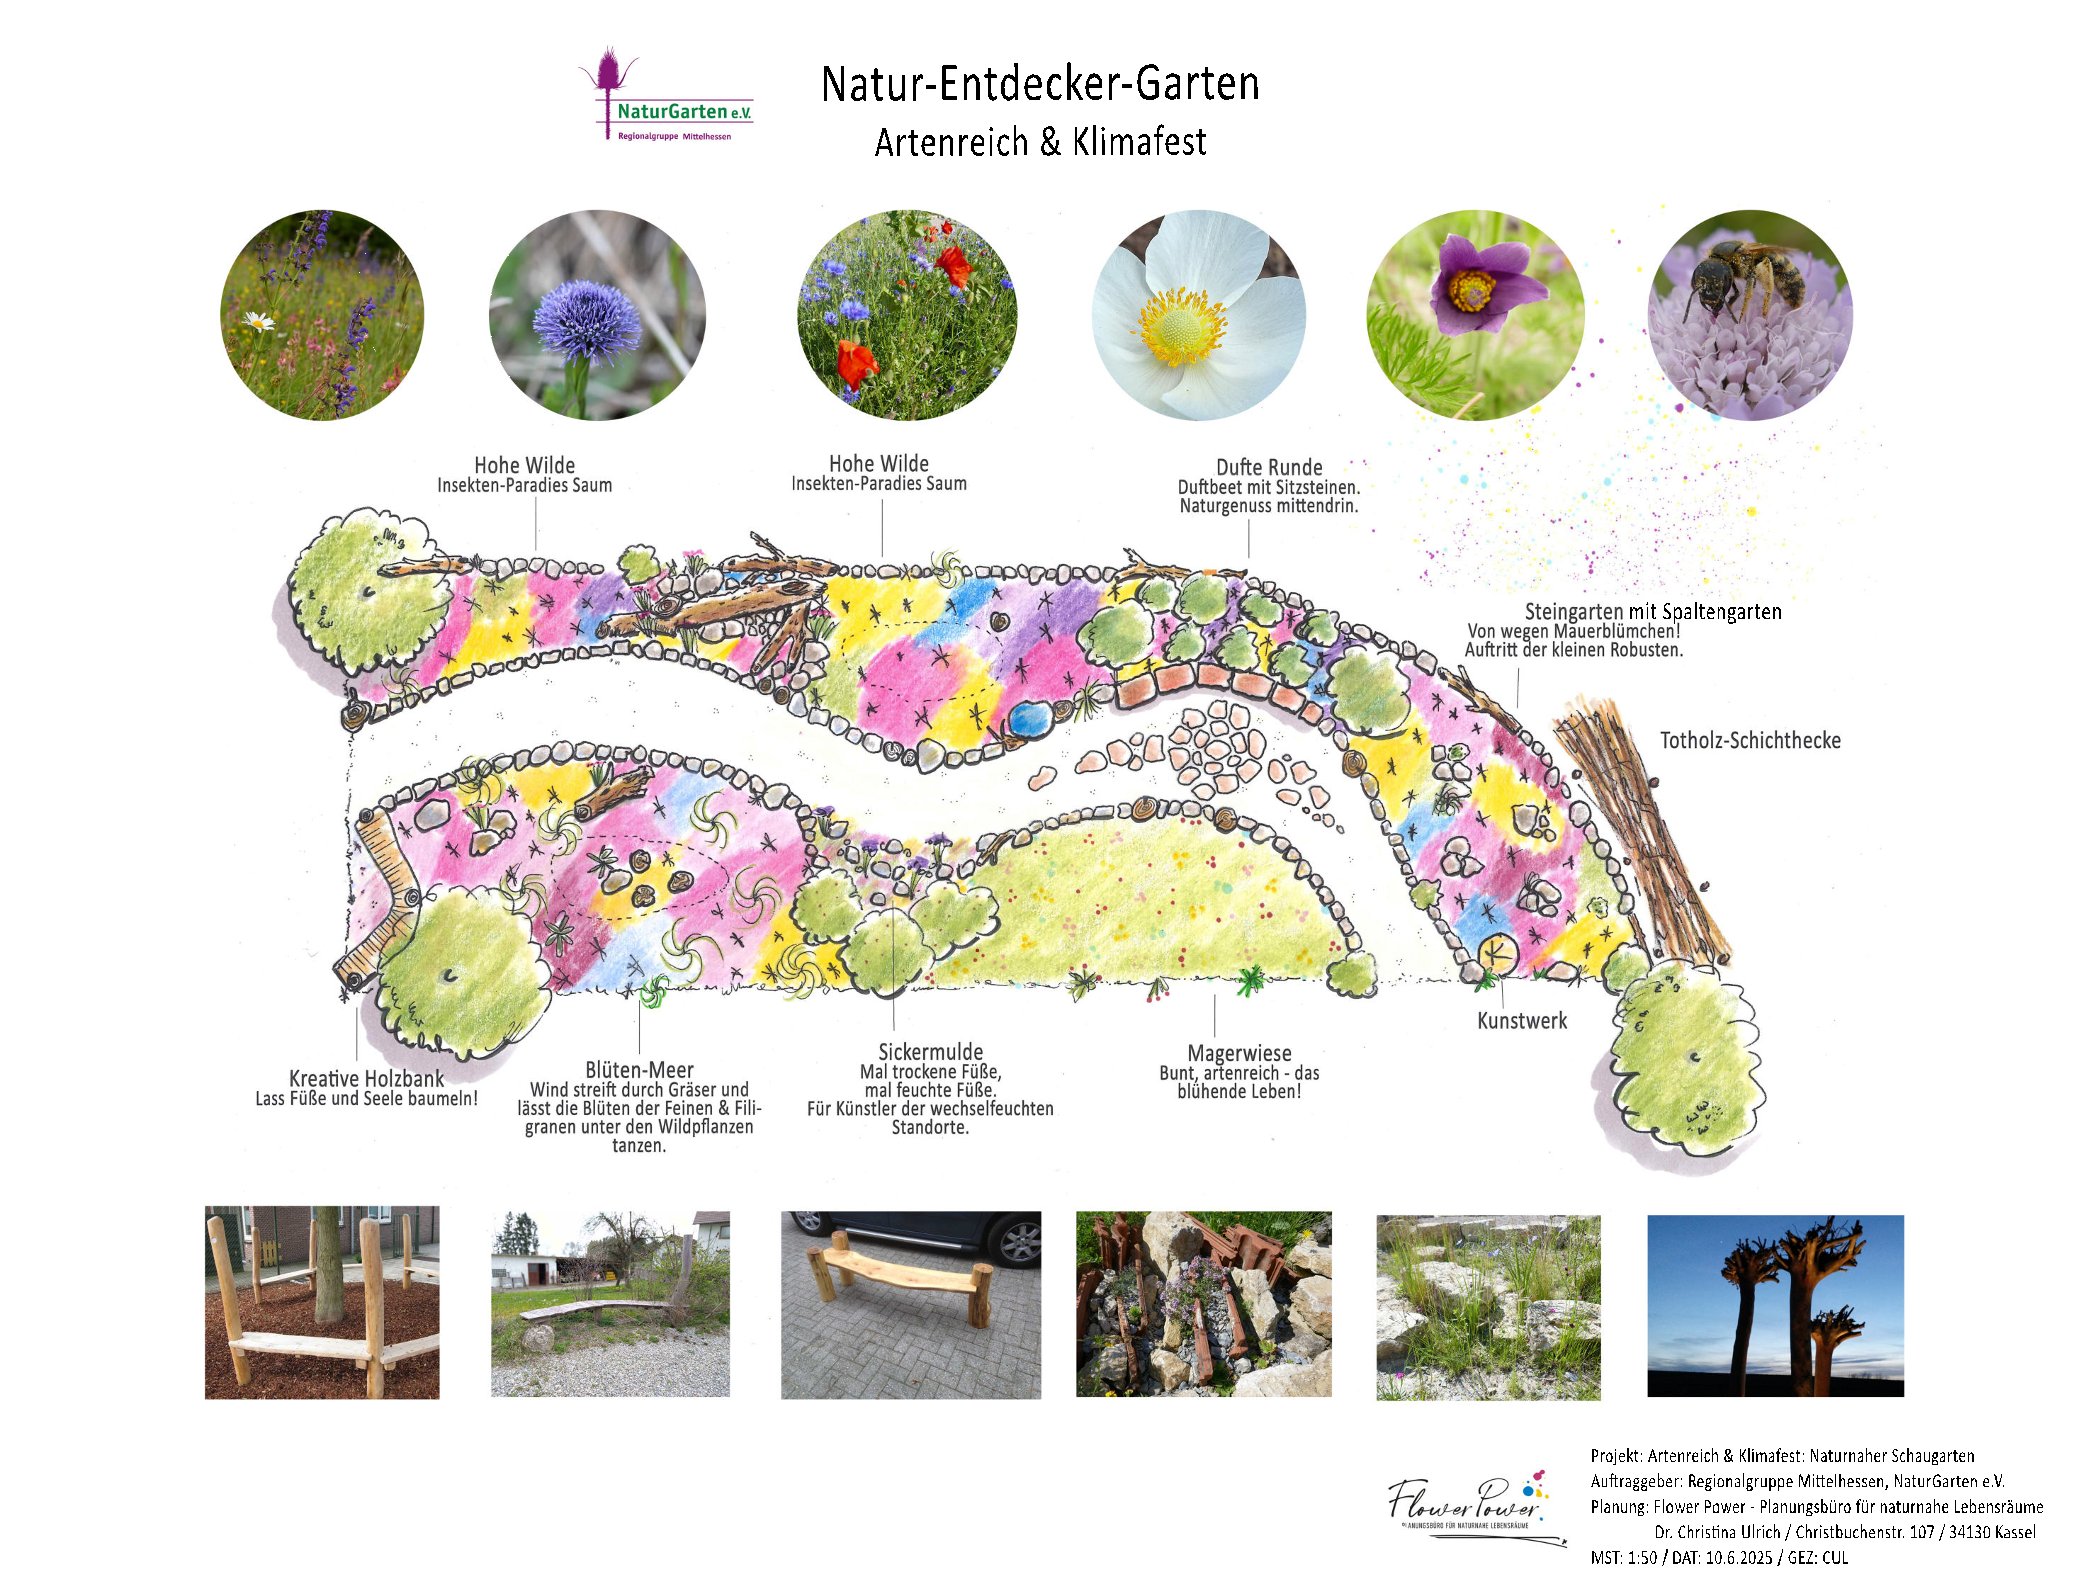 Wir bekommen einen Natur-Entdecker-Garten im Botanischen Garten Marburg